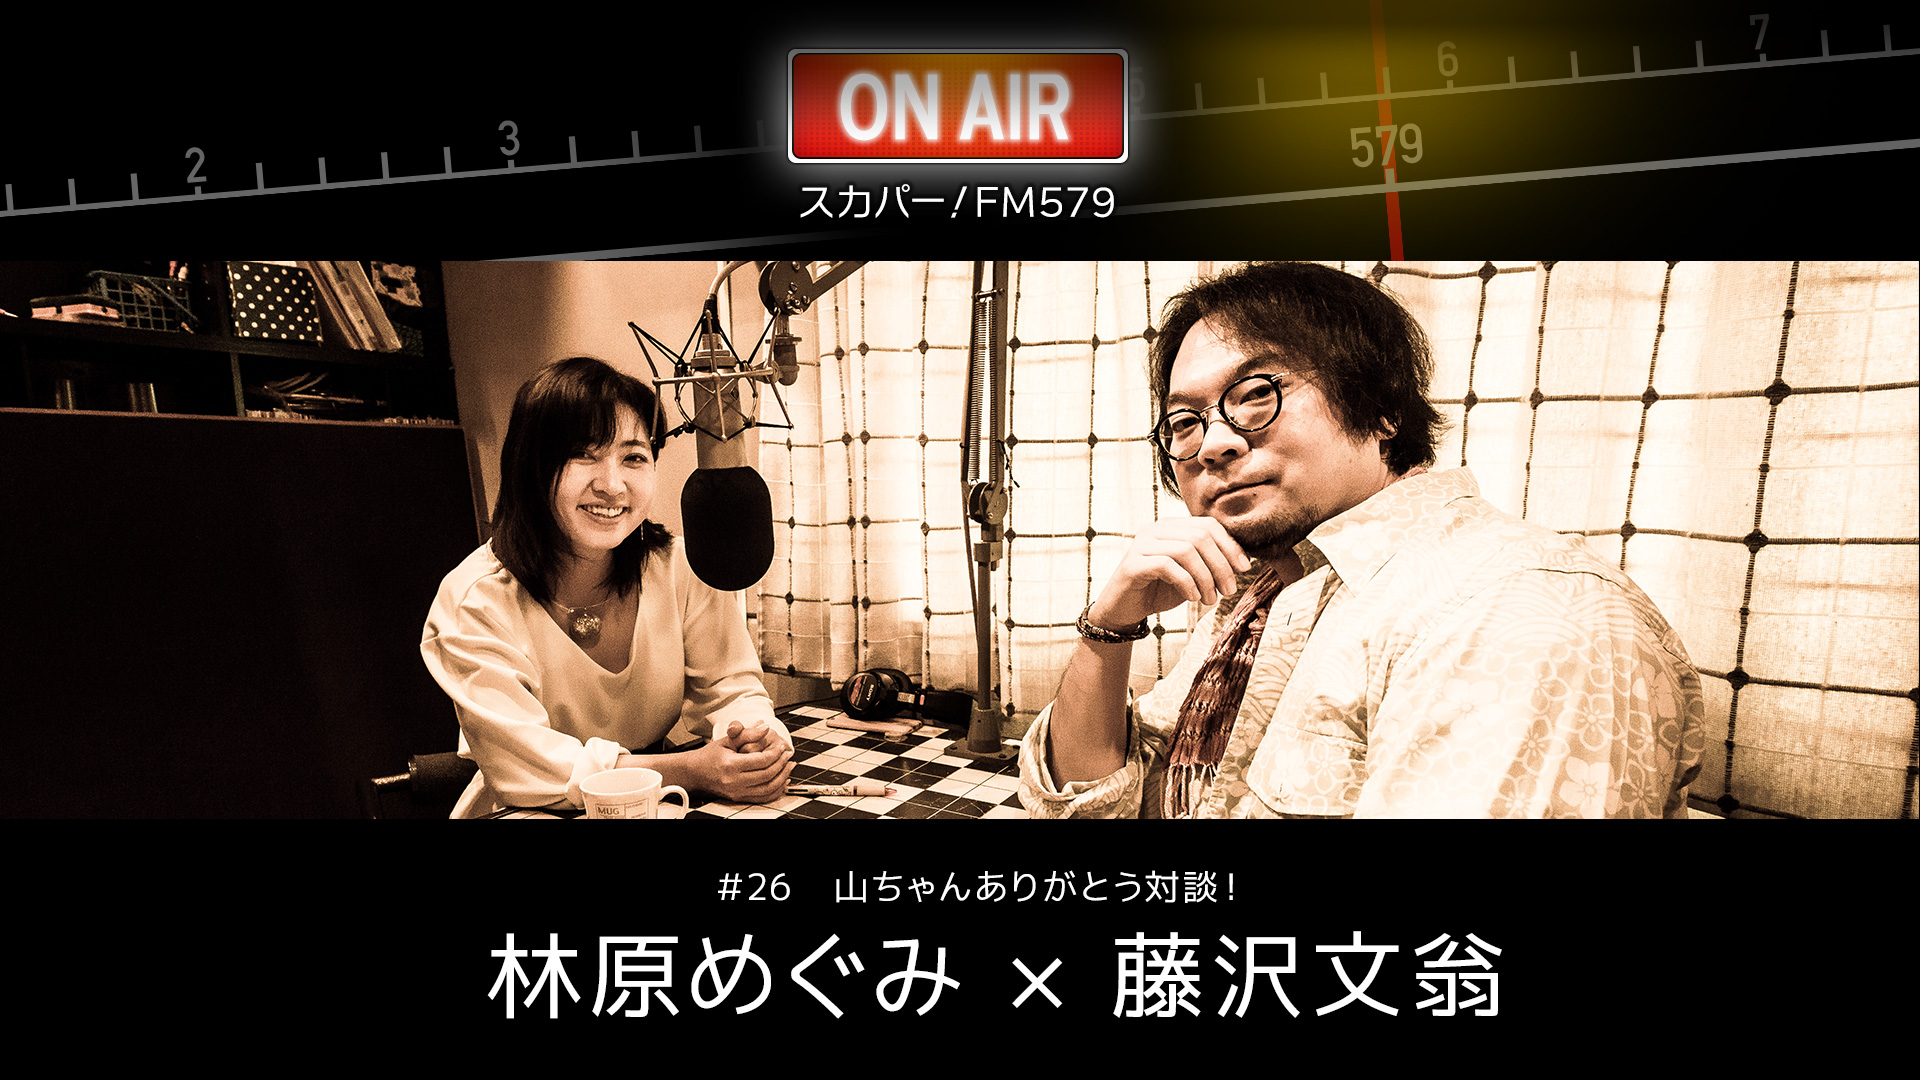 林原めぐみさん＆演出家・藤沢文翁さんがテレビ・ラジオ番組「スカパー! FM579」に出演